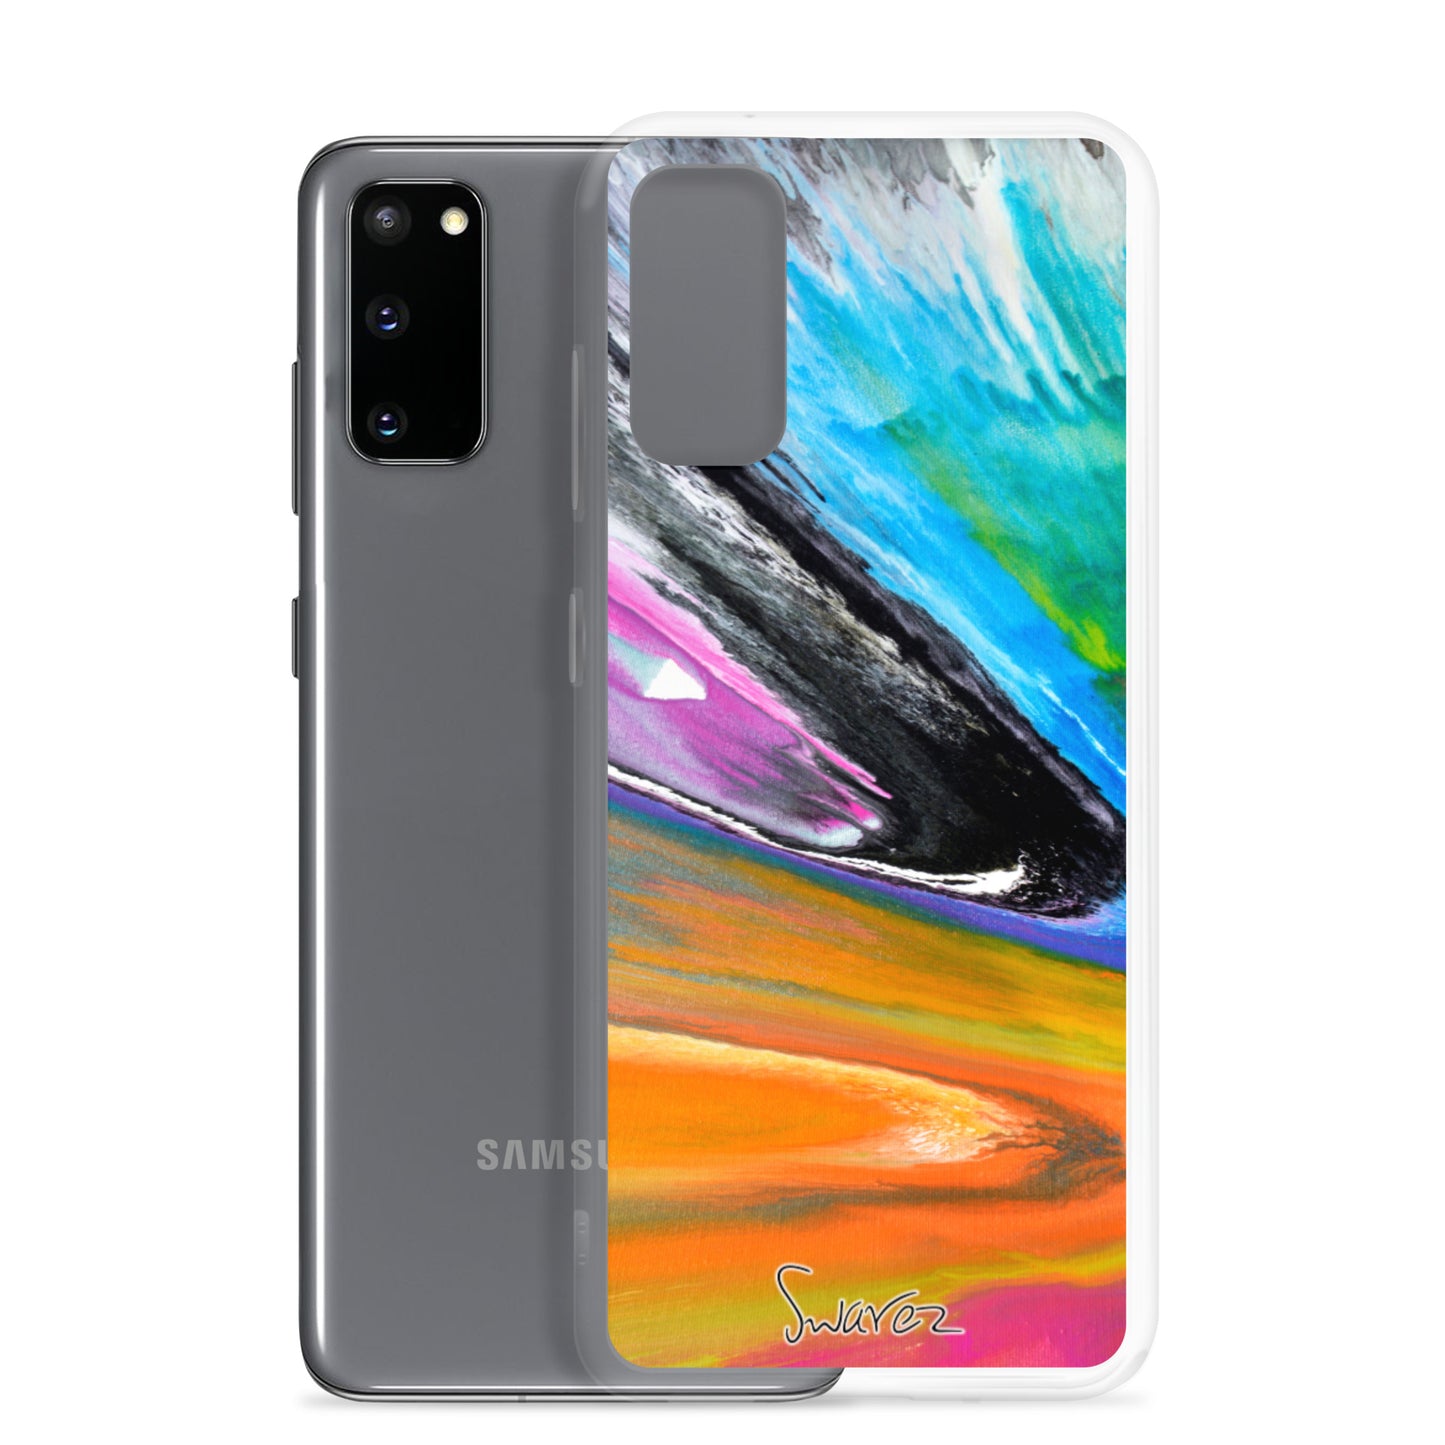 Samsung Case - Spin art design